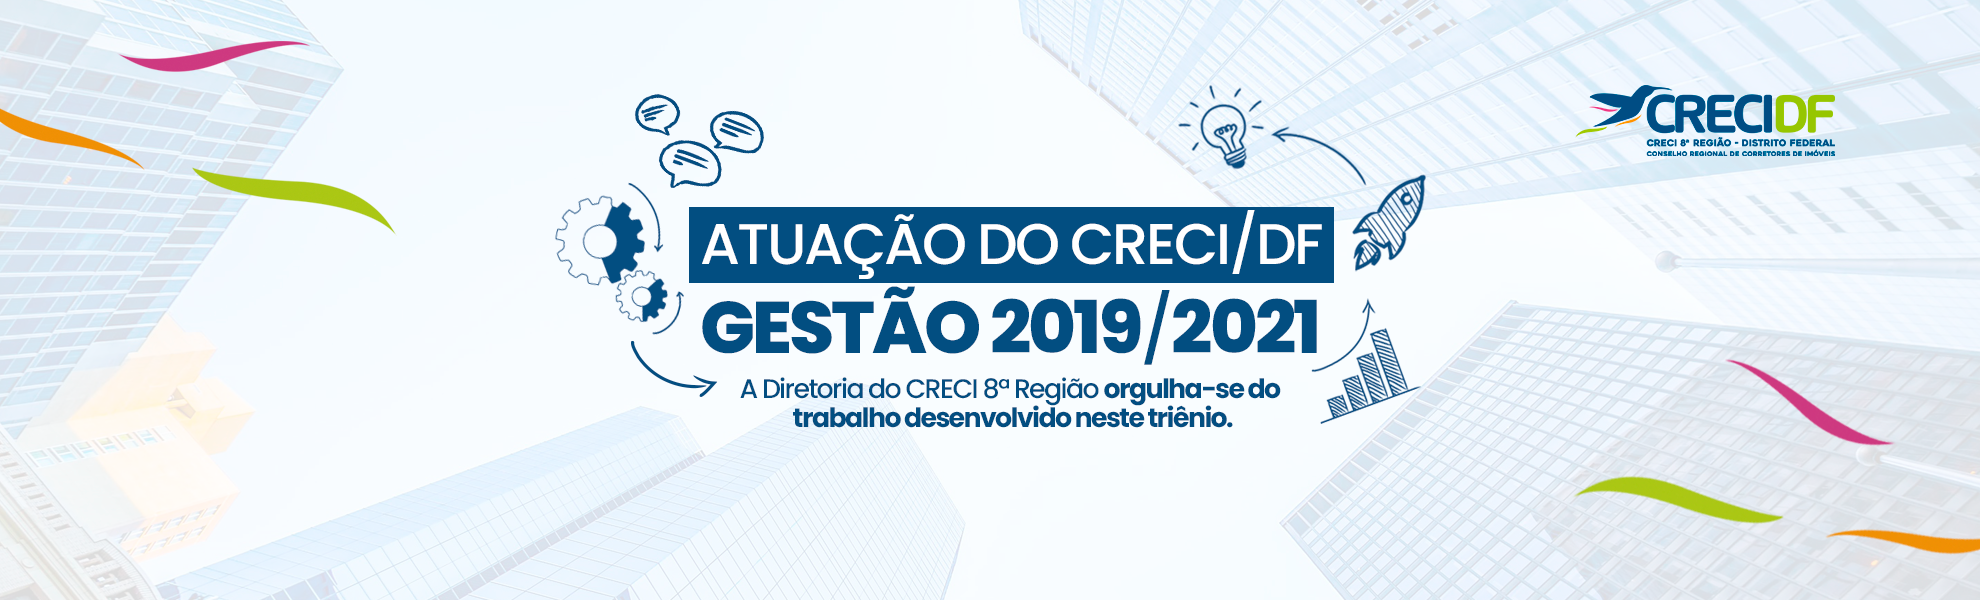 Banner_Atuação-do-Creci-df_2019-2021